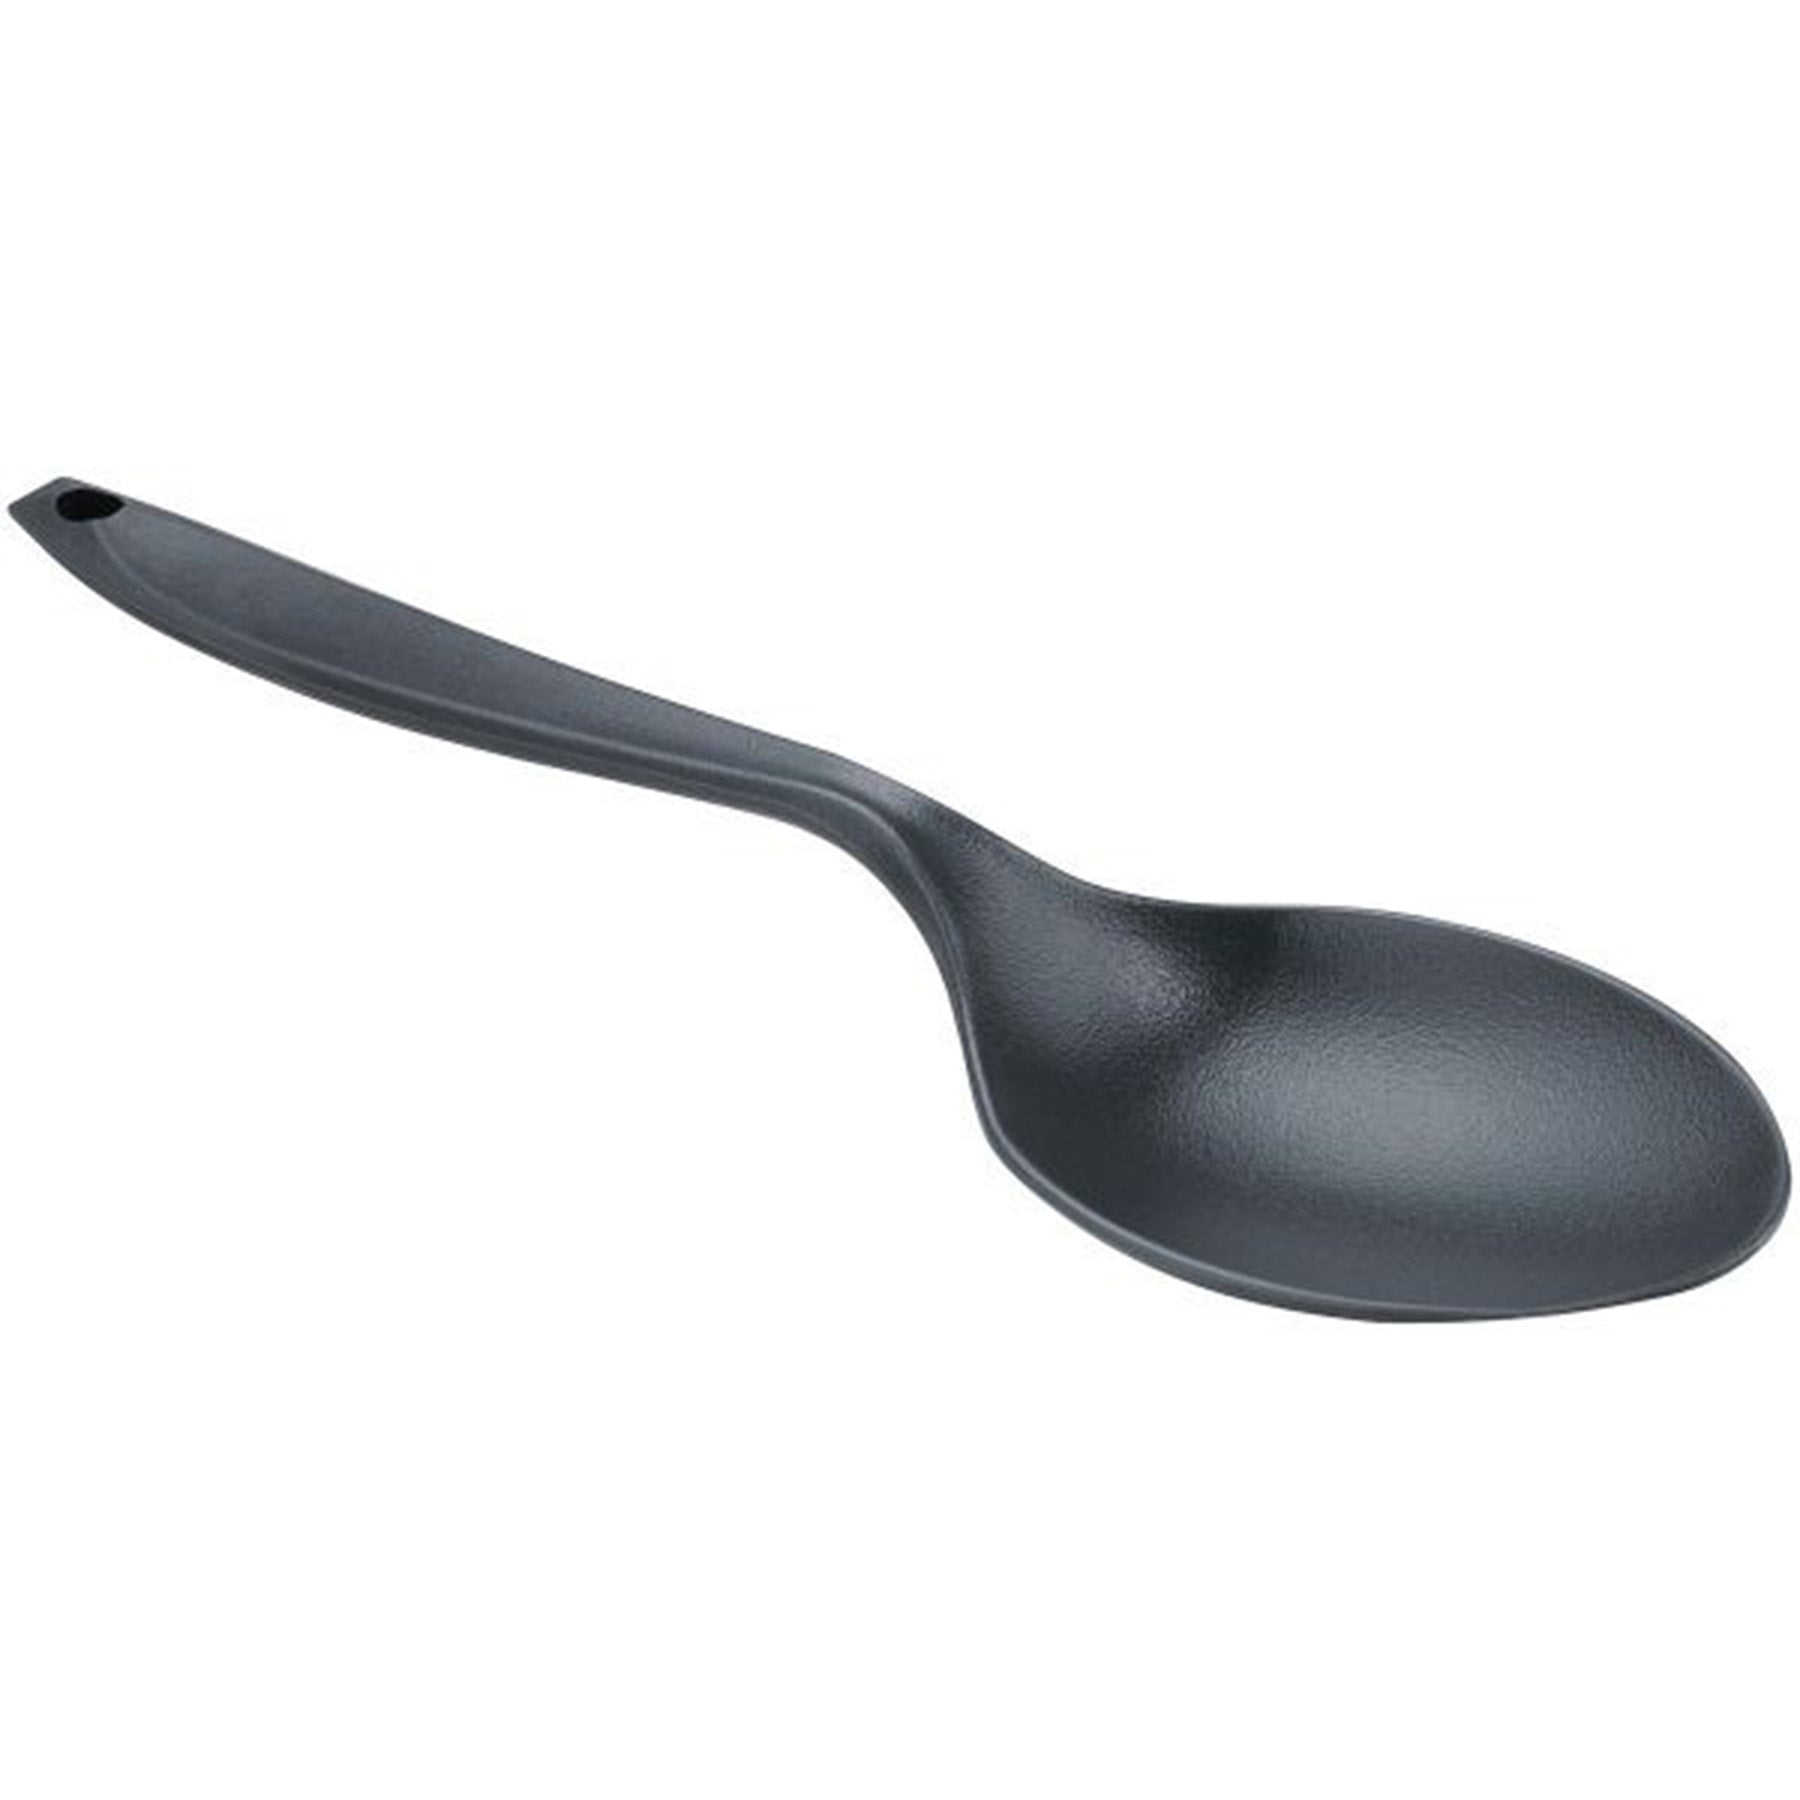 a lexan spoon